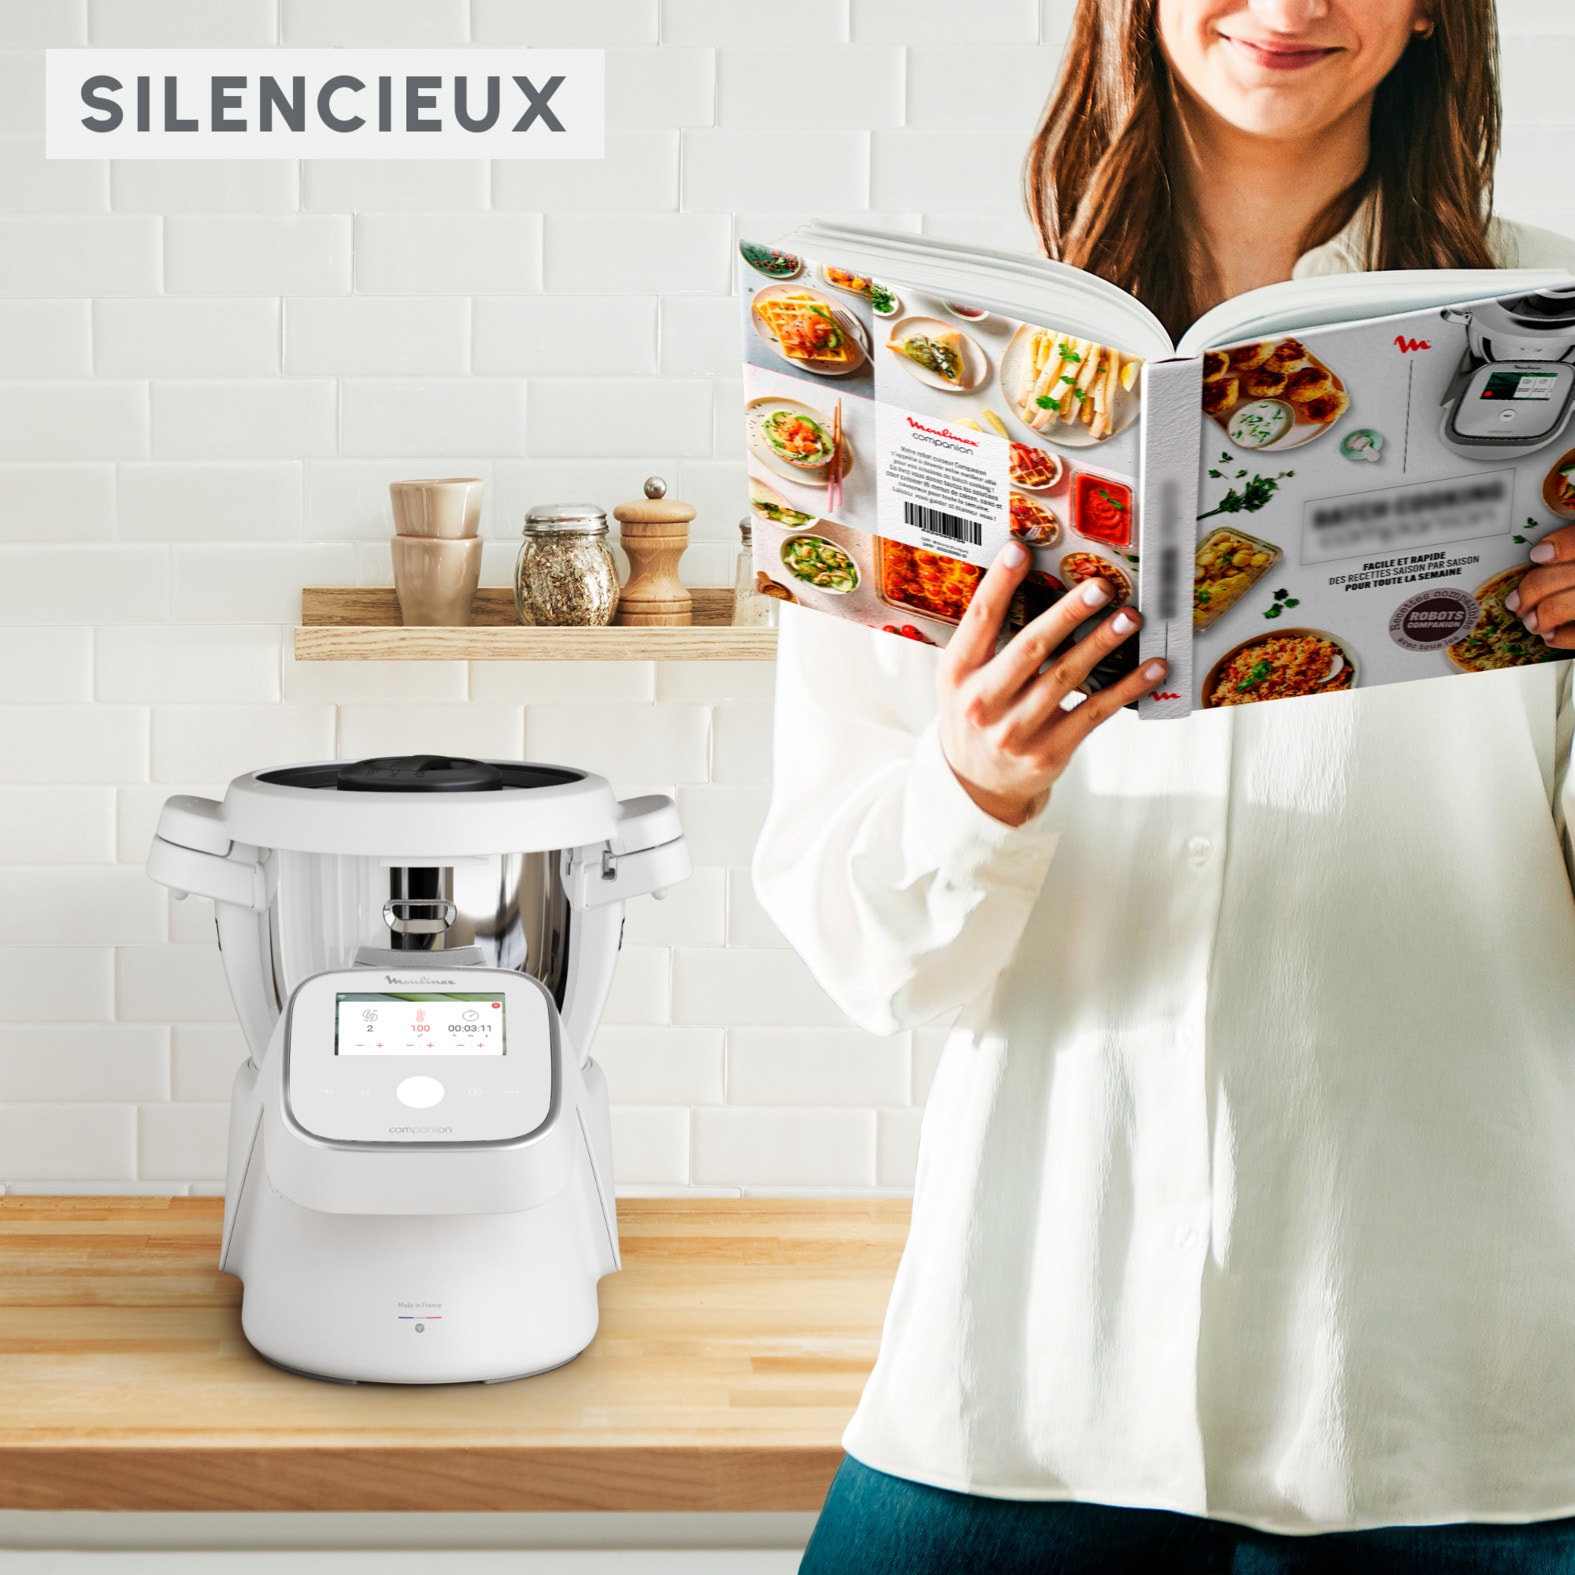  Jusqu'à 200 euros de réduction sur les robots cuiseurs Moulinex 